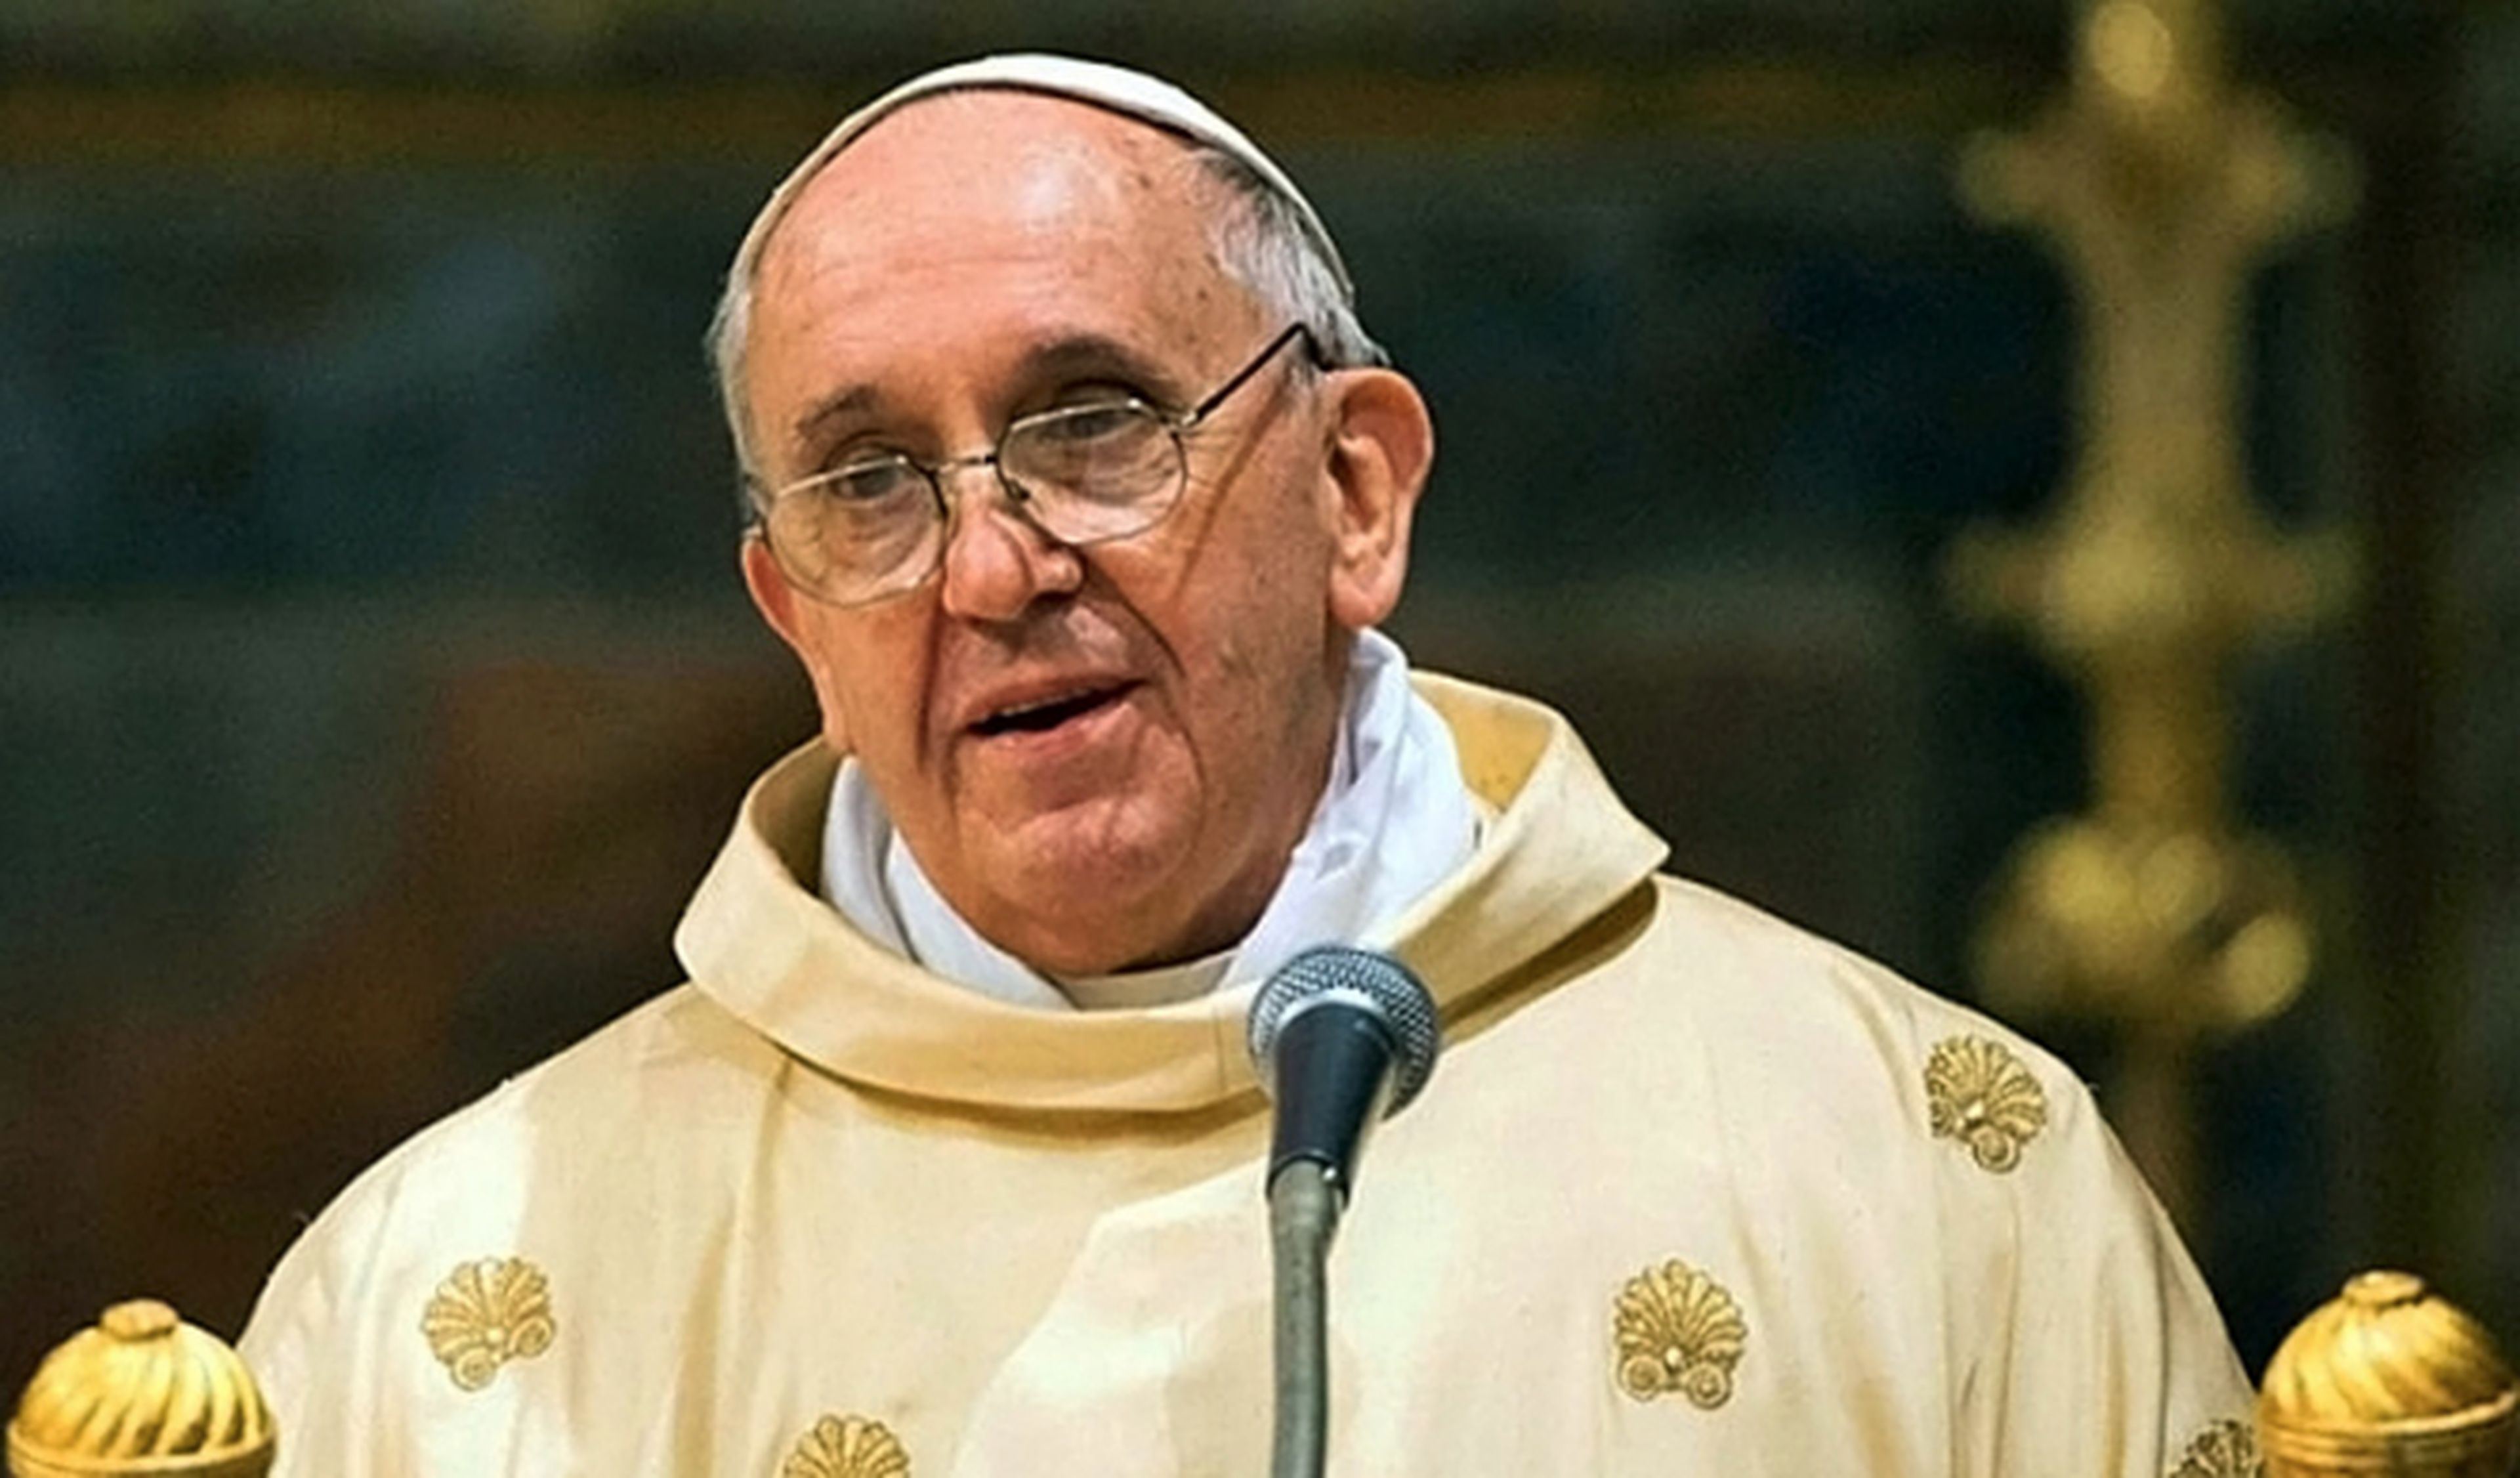 Mueren tres familiares del Papa en accidente de tráfico